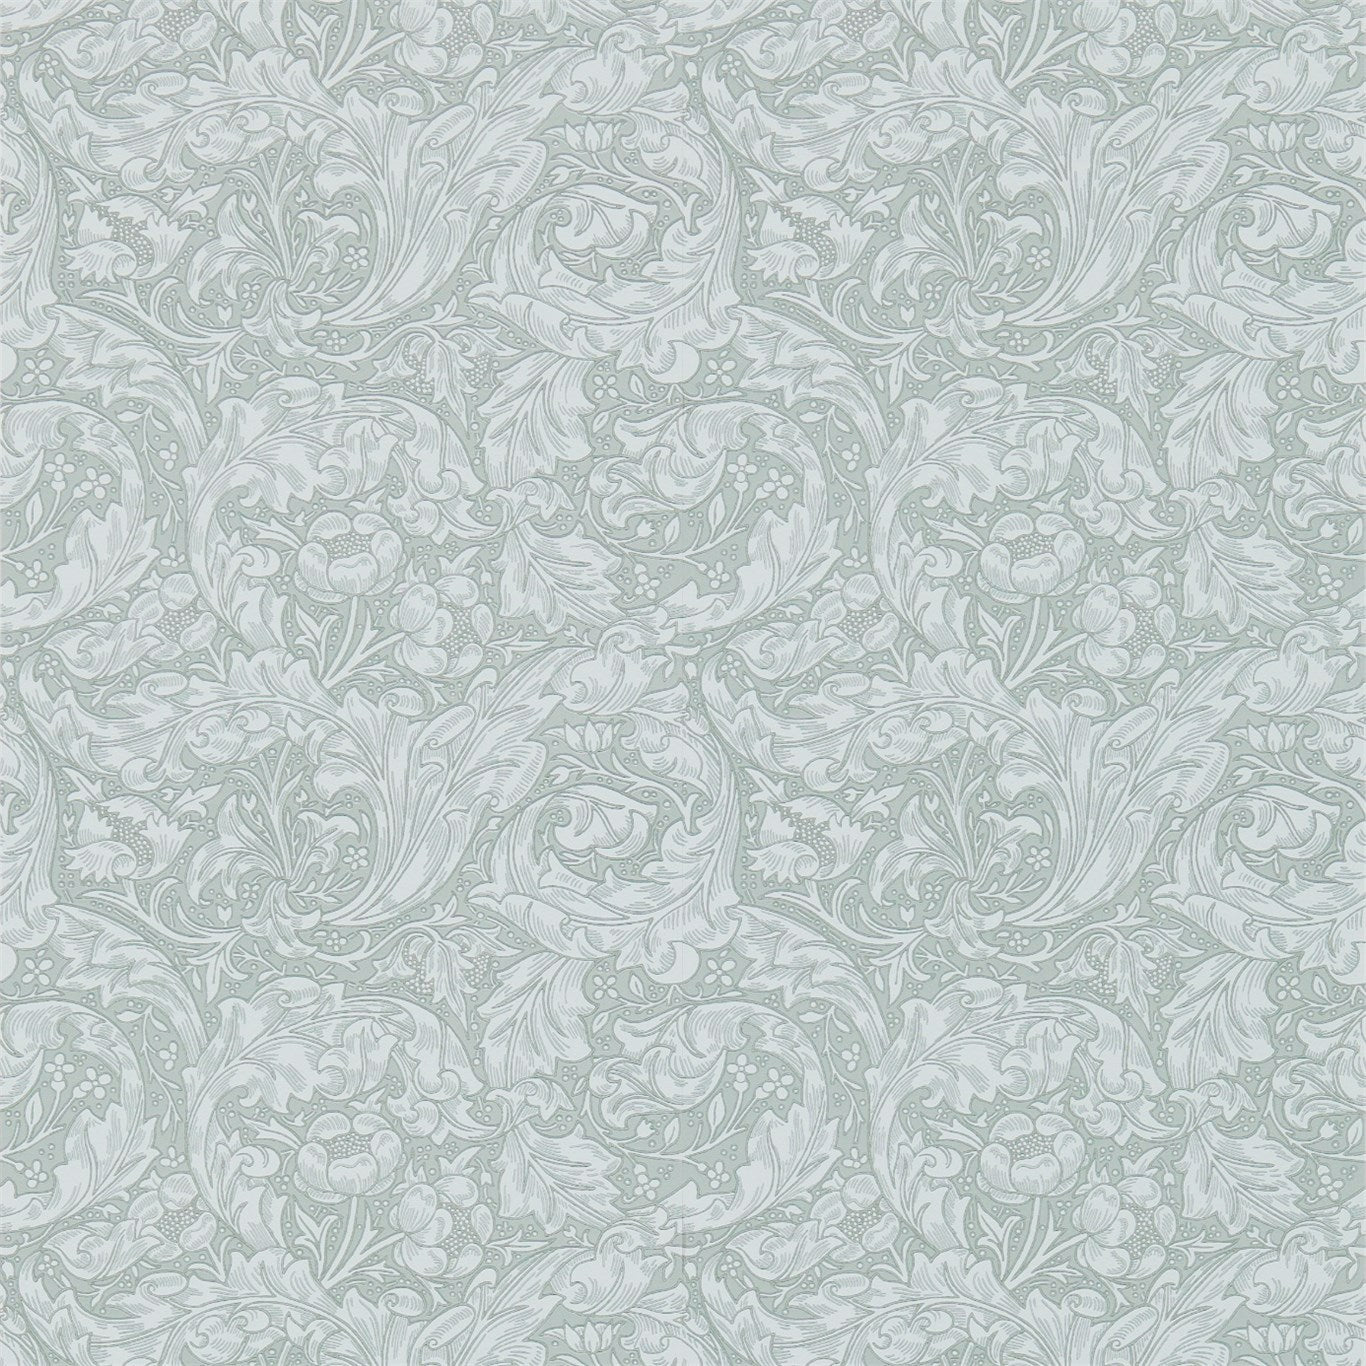 Bachelors Button Silver Wallpaper DM3W214735 by Morris & Co